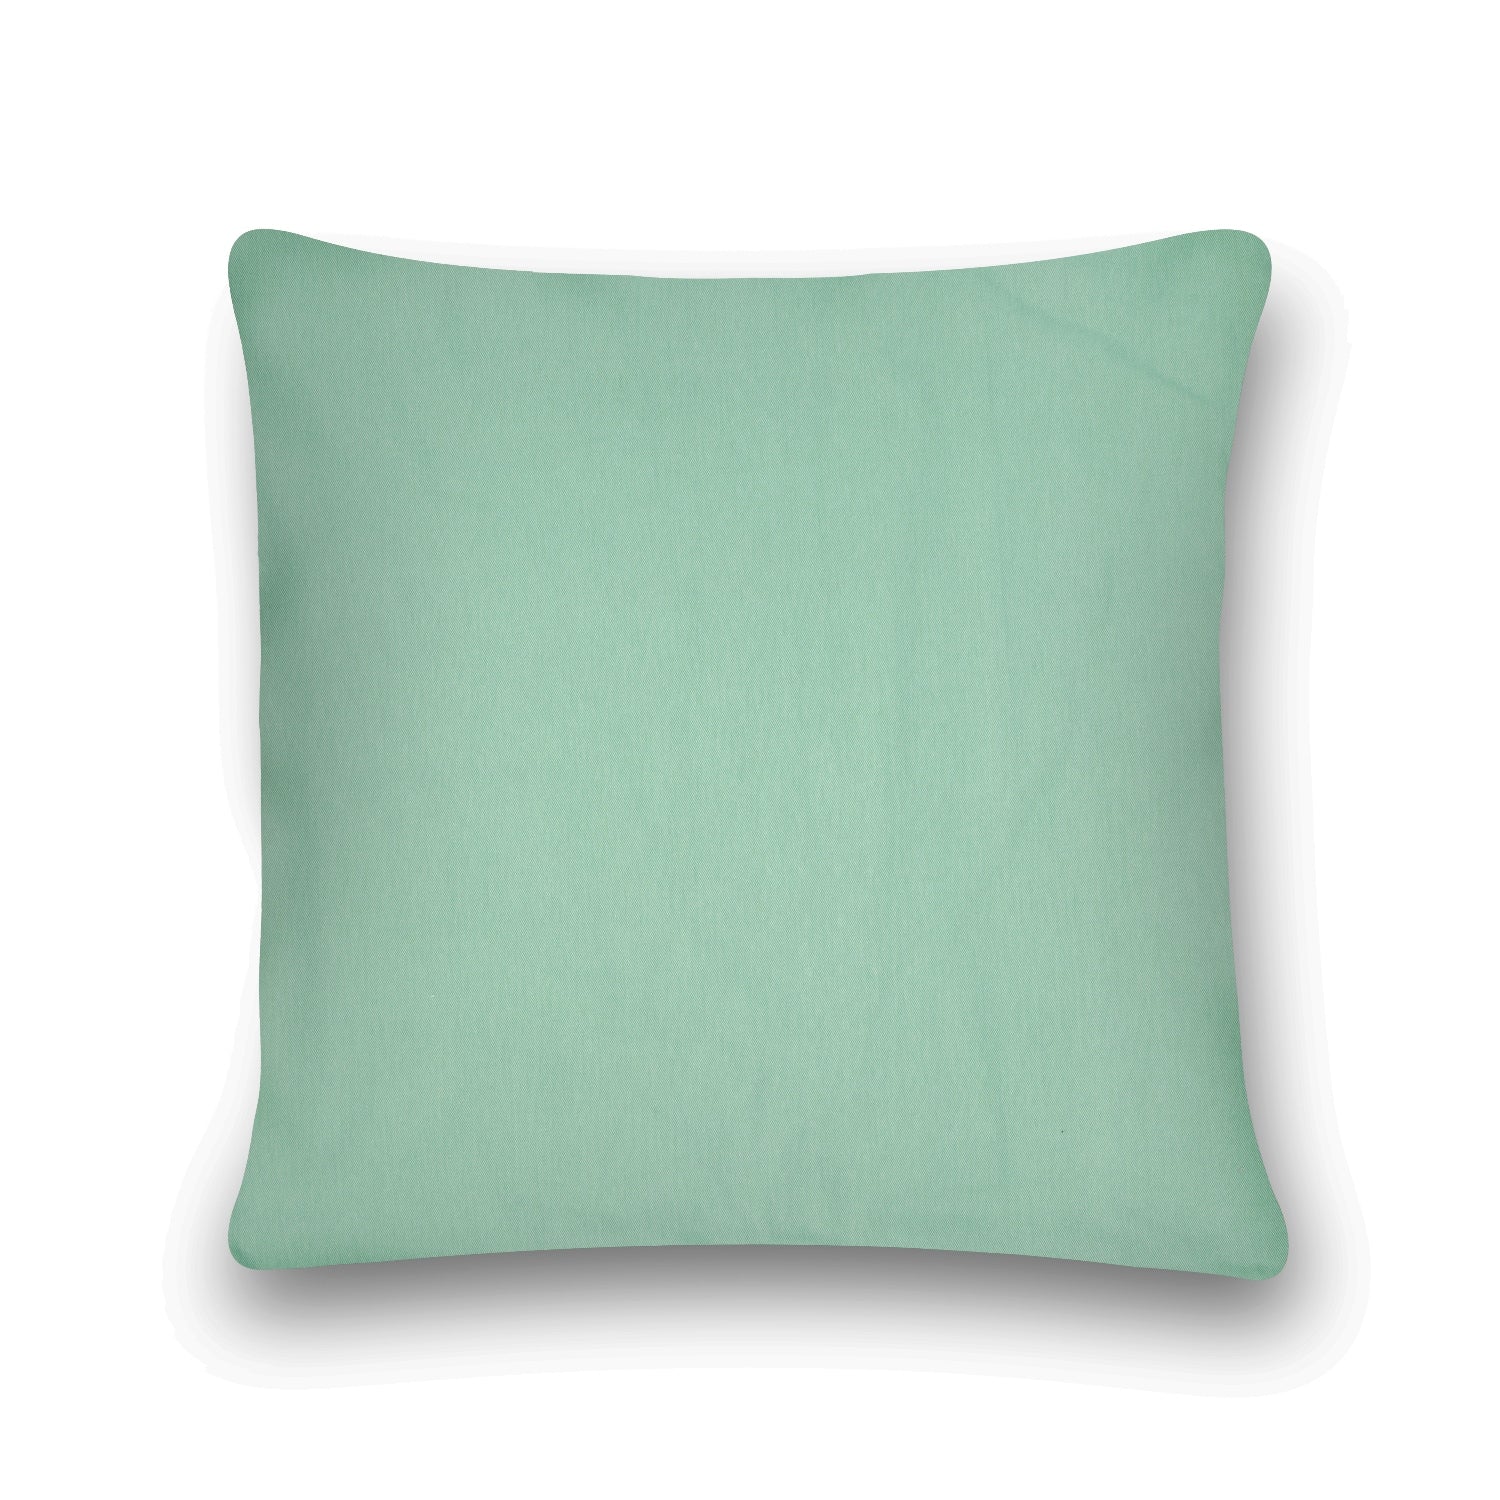 'Tropical Refuge' 100% Cotton Velvet Cushion Cover